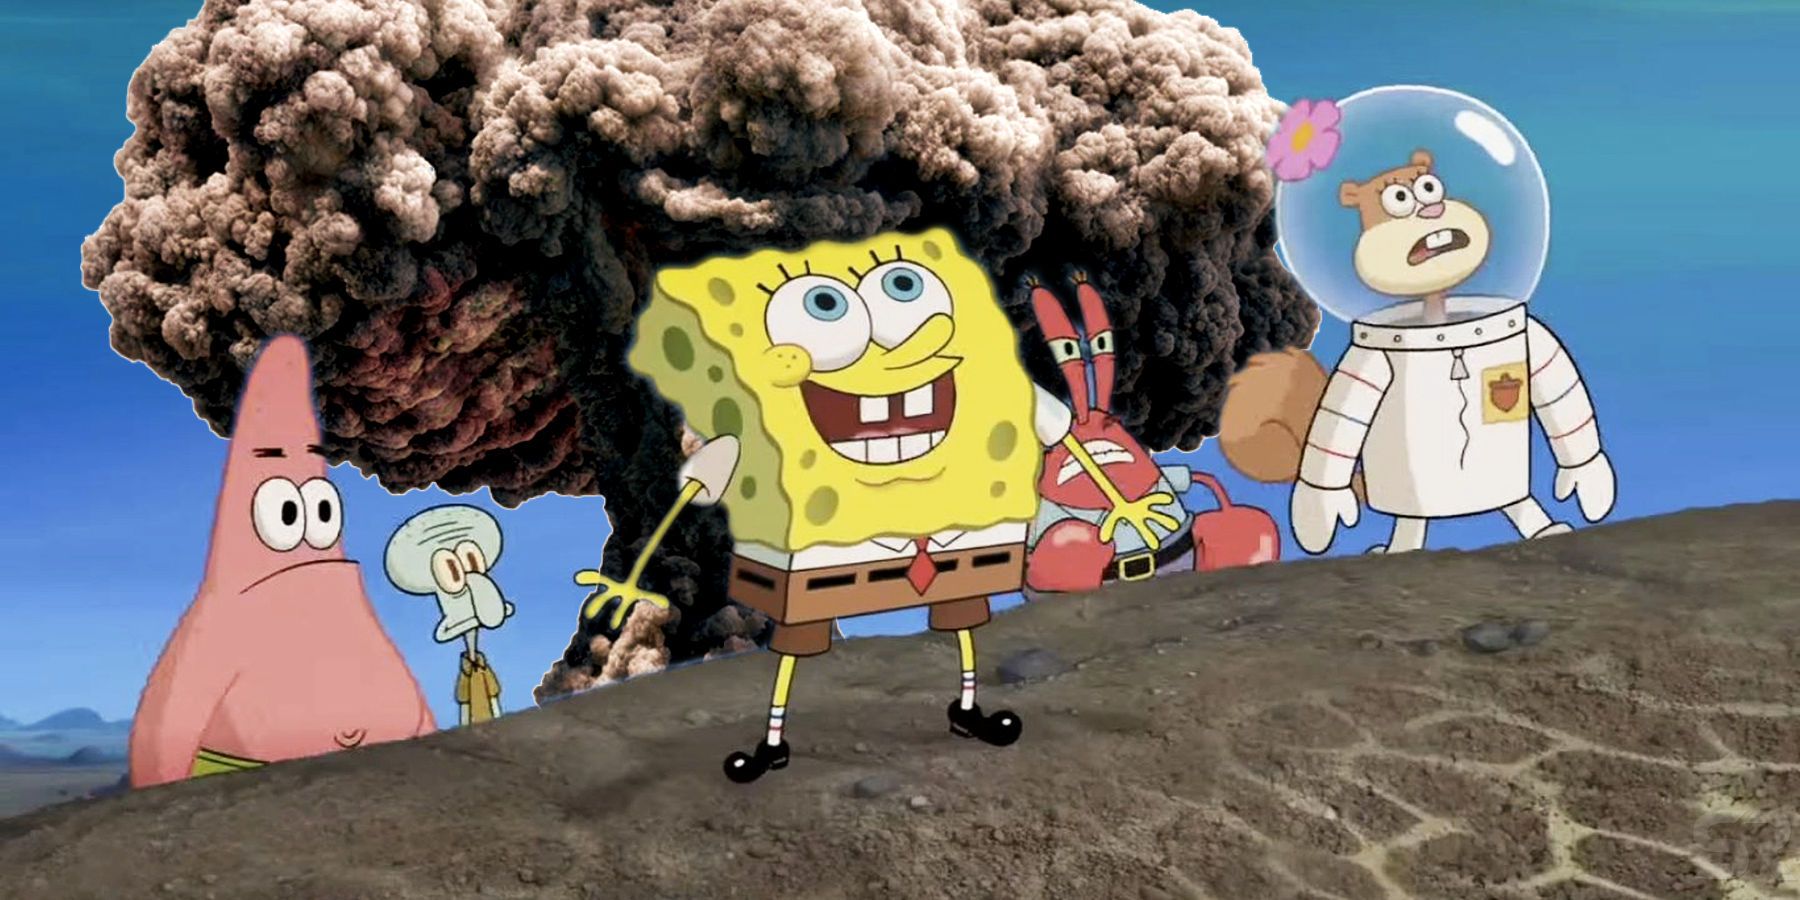 SpongeBob SquarePants And Nuclear Bomb